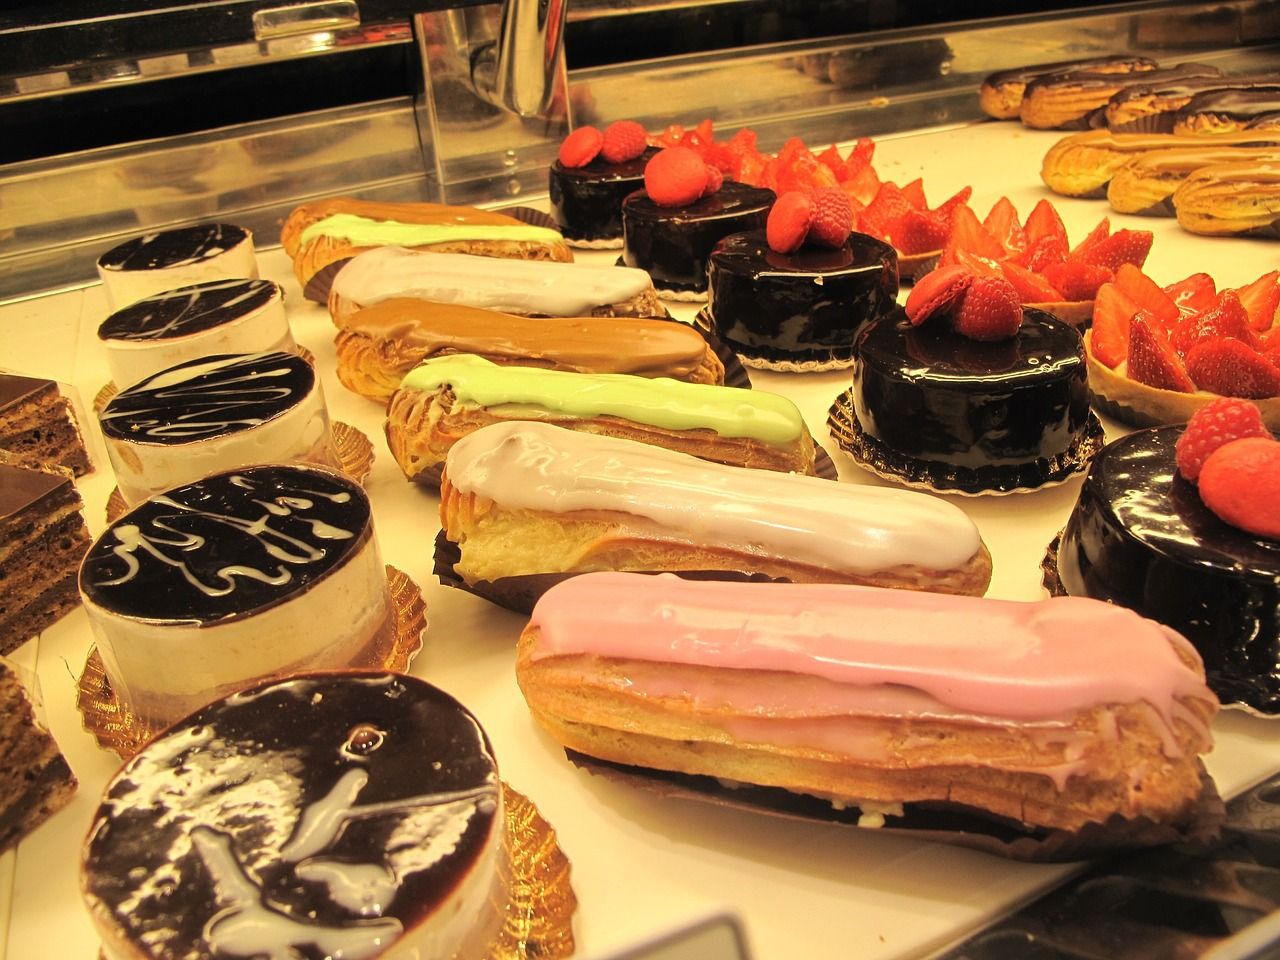 Les consommateurs belges achètent principalement des pâtisseries à la boulangerie